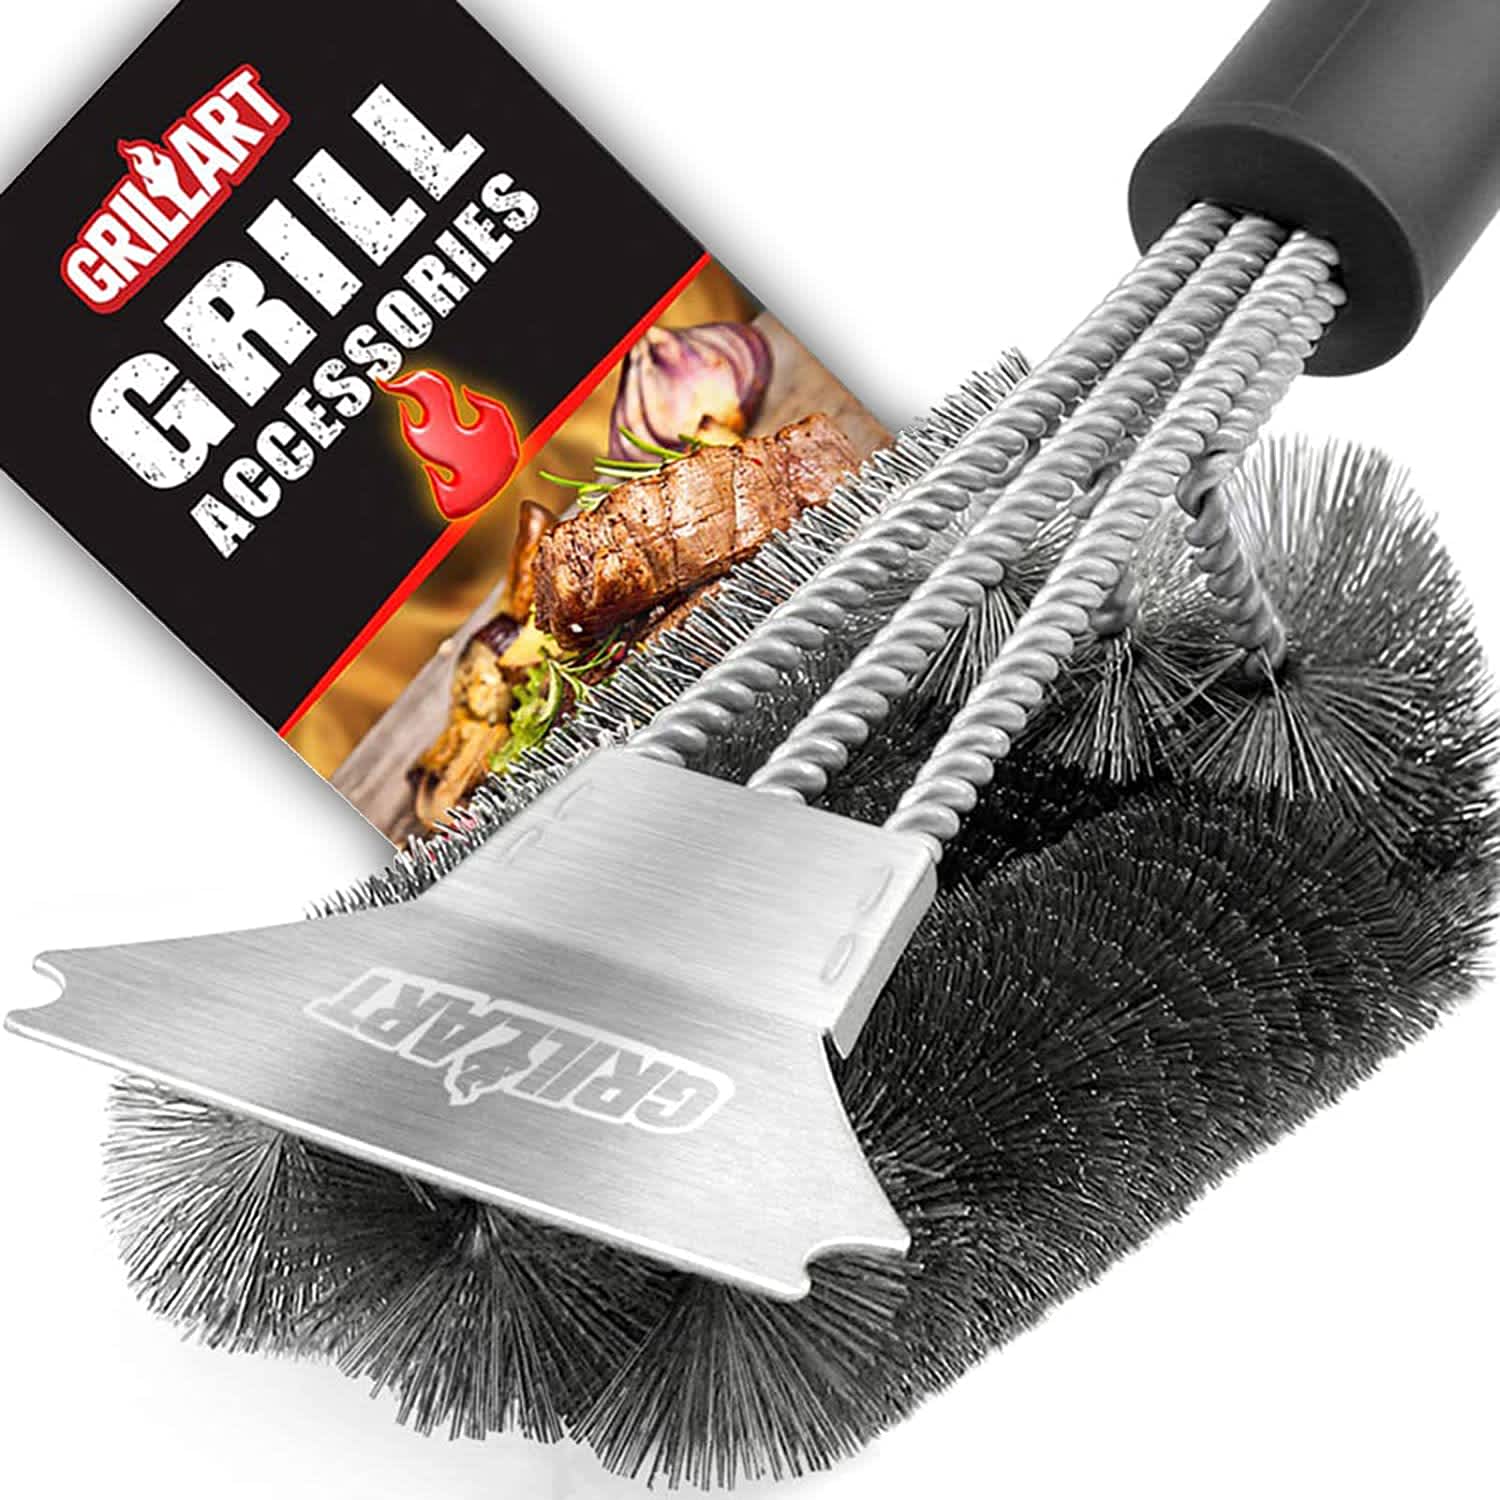 Grillart Grill Brush and Scraper Review: Versatile Tool